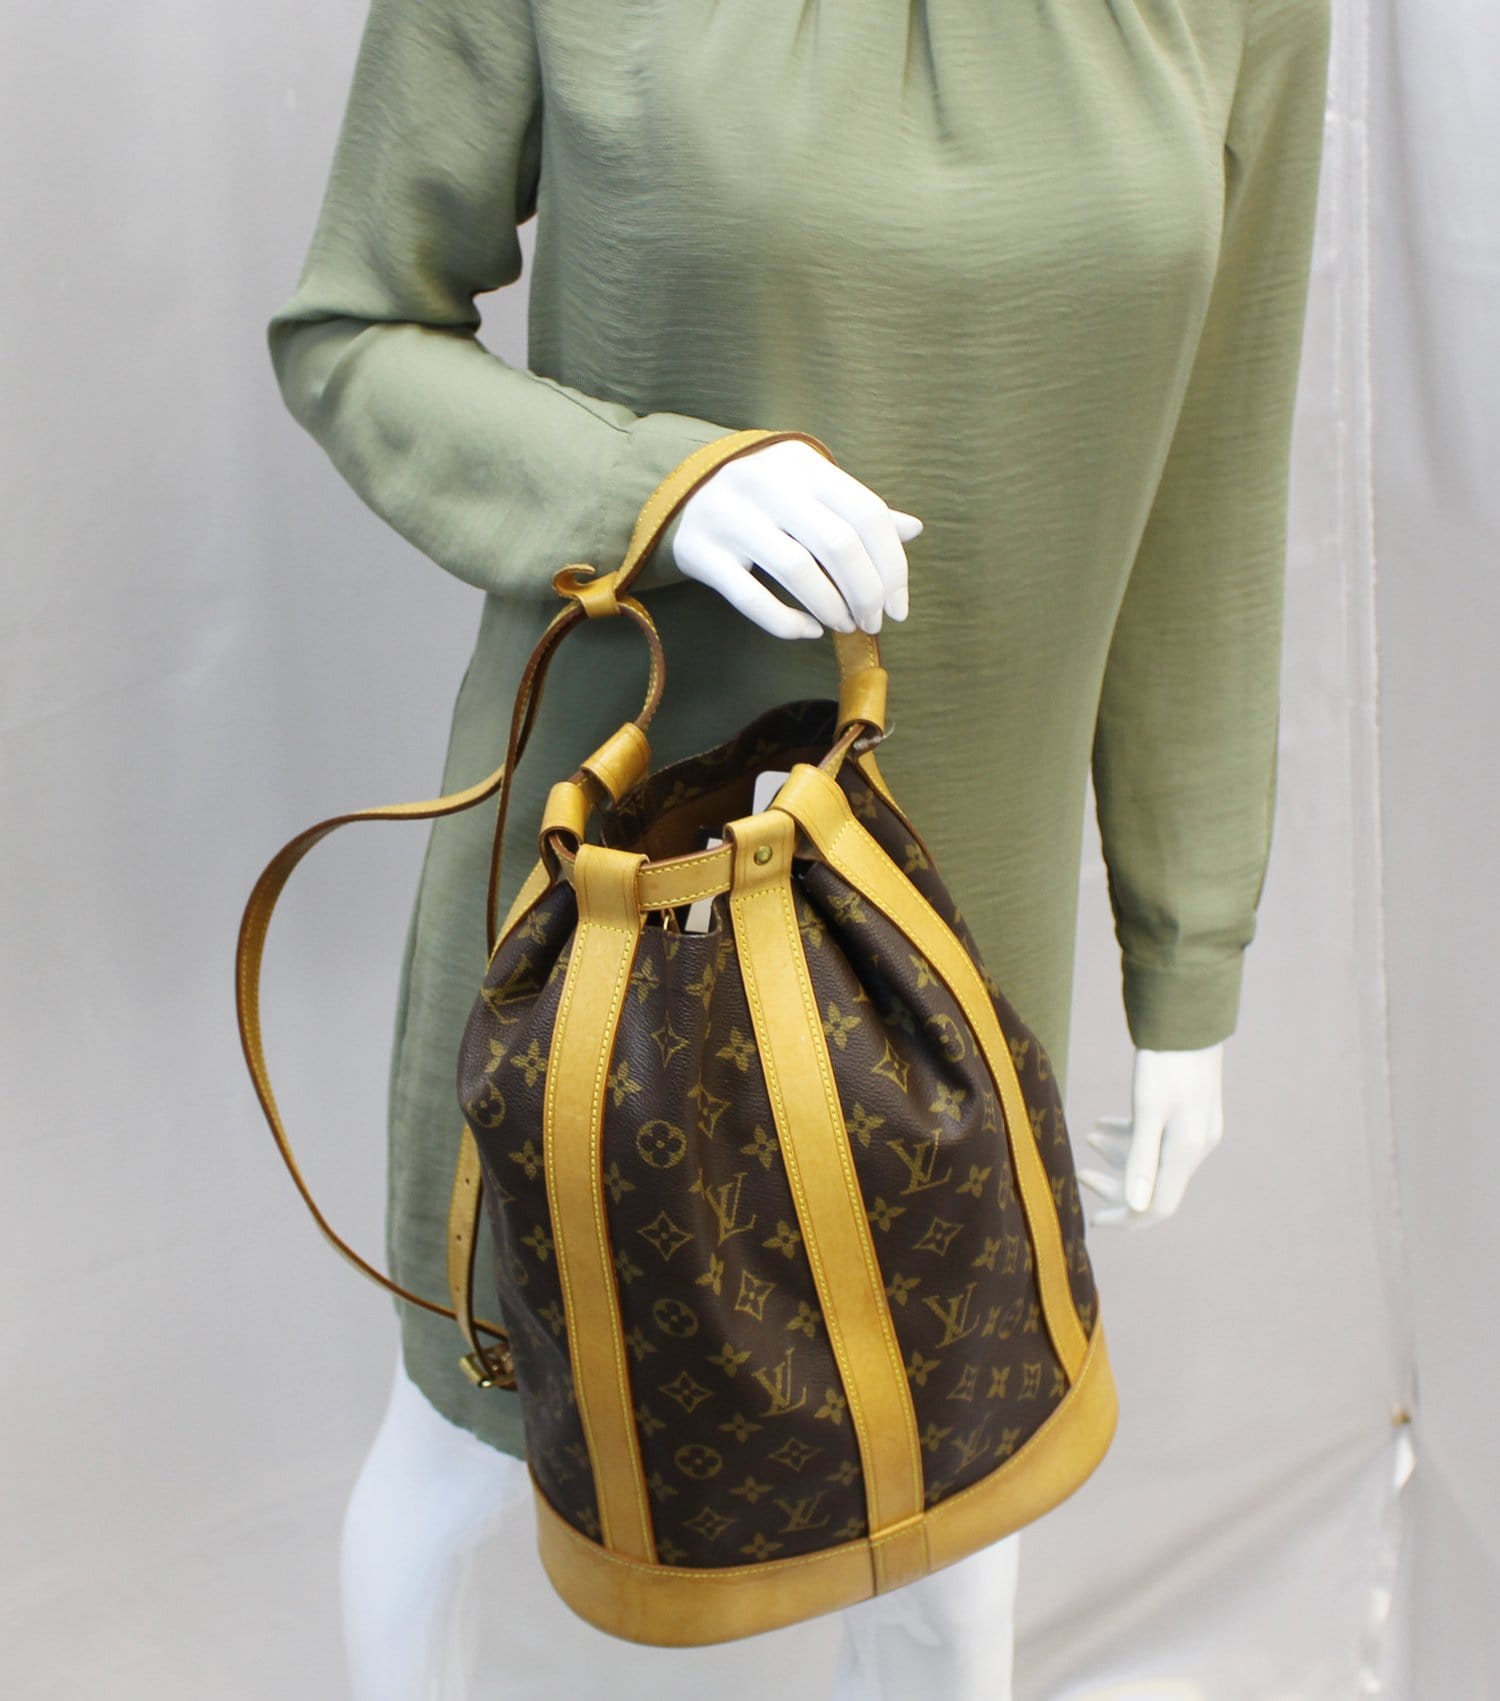 Authentic Vintage Louis Vuitton Monogram Randonee PM Backpack Bag